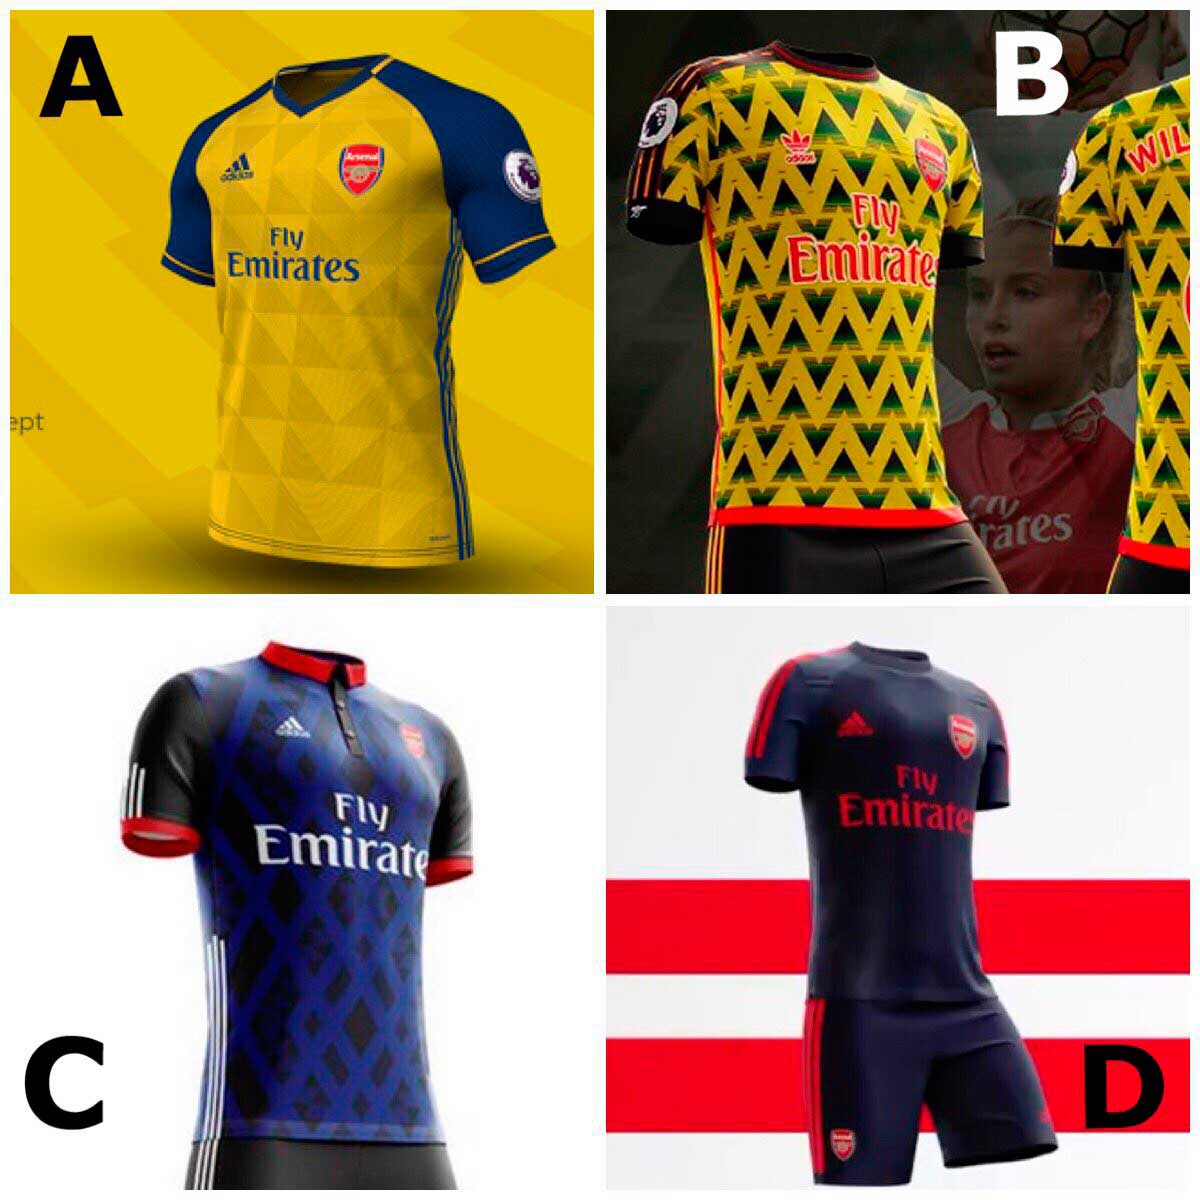 Arsenal ficha por adidas y estos serían sus posibles jerseys 3